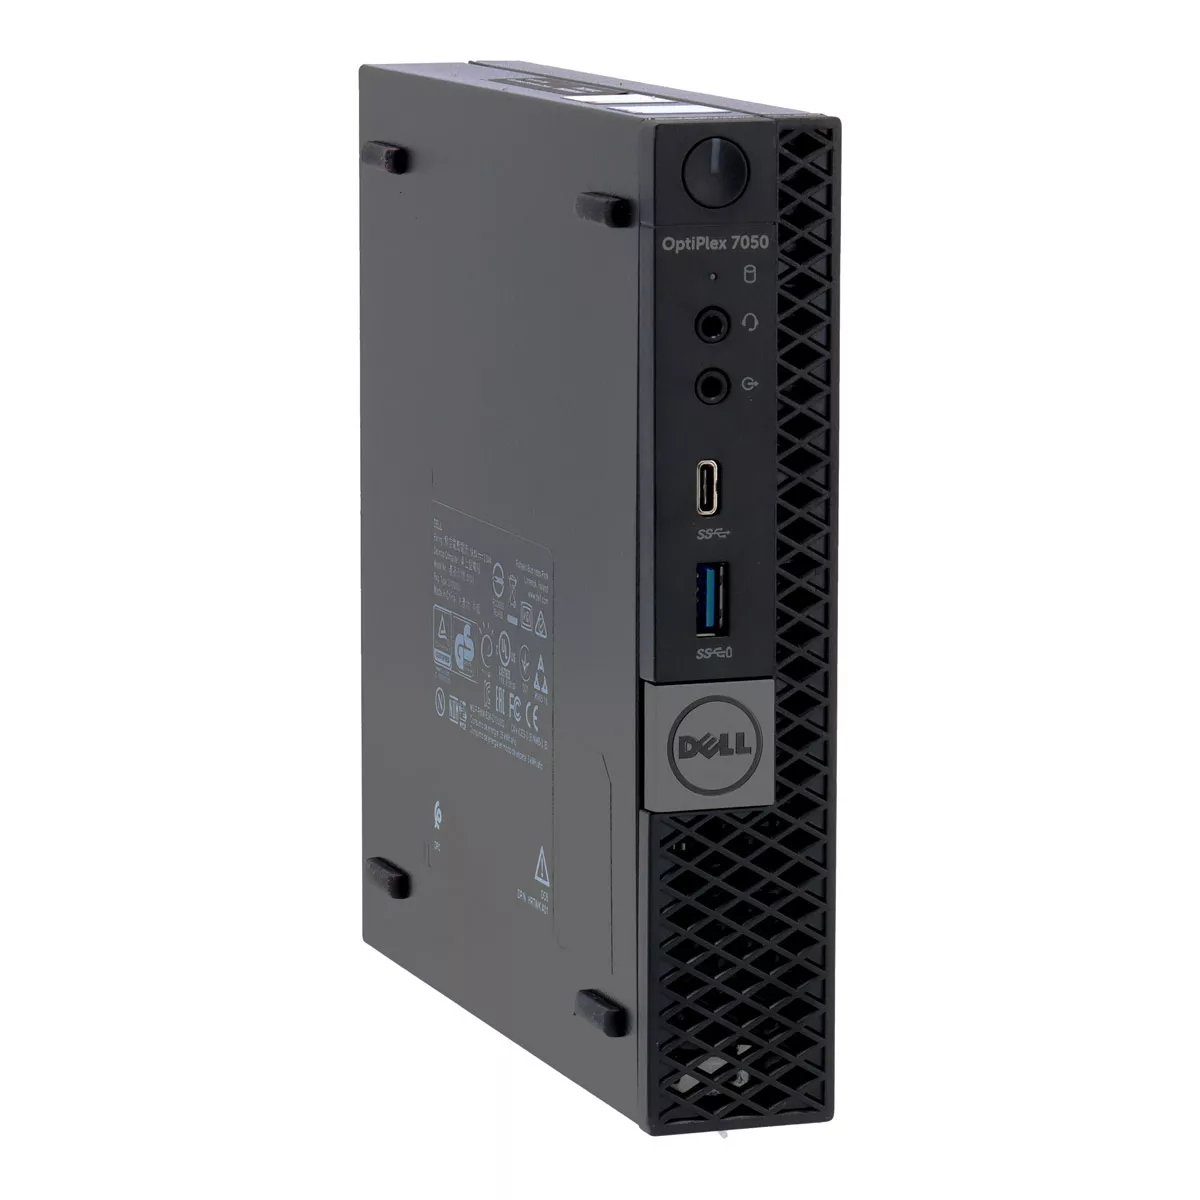 Dell Optiplex 7050 Micro Core i5 7500 3,4 GHz 240 GB nVME SSD A+